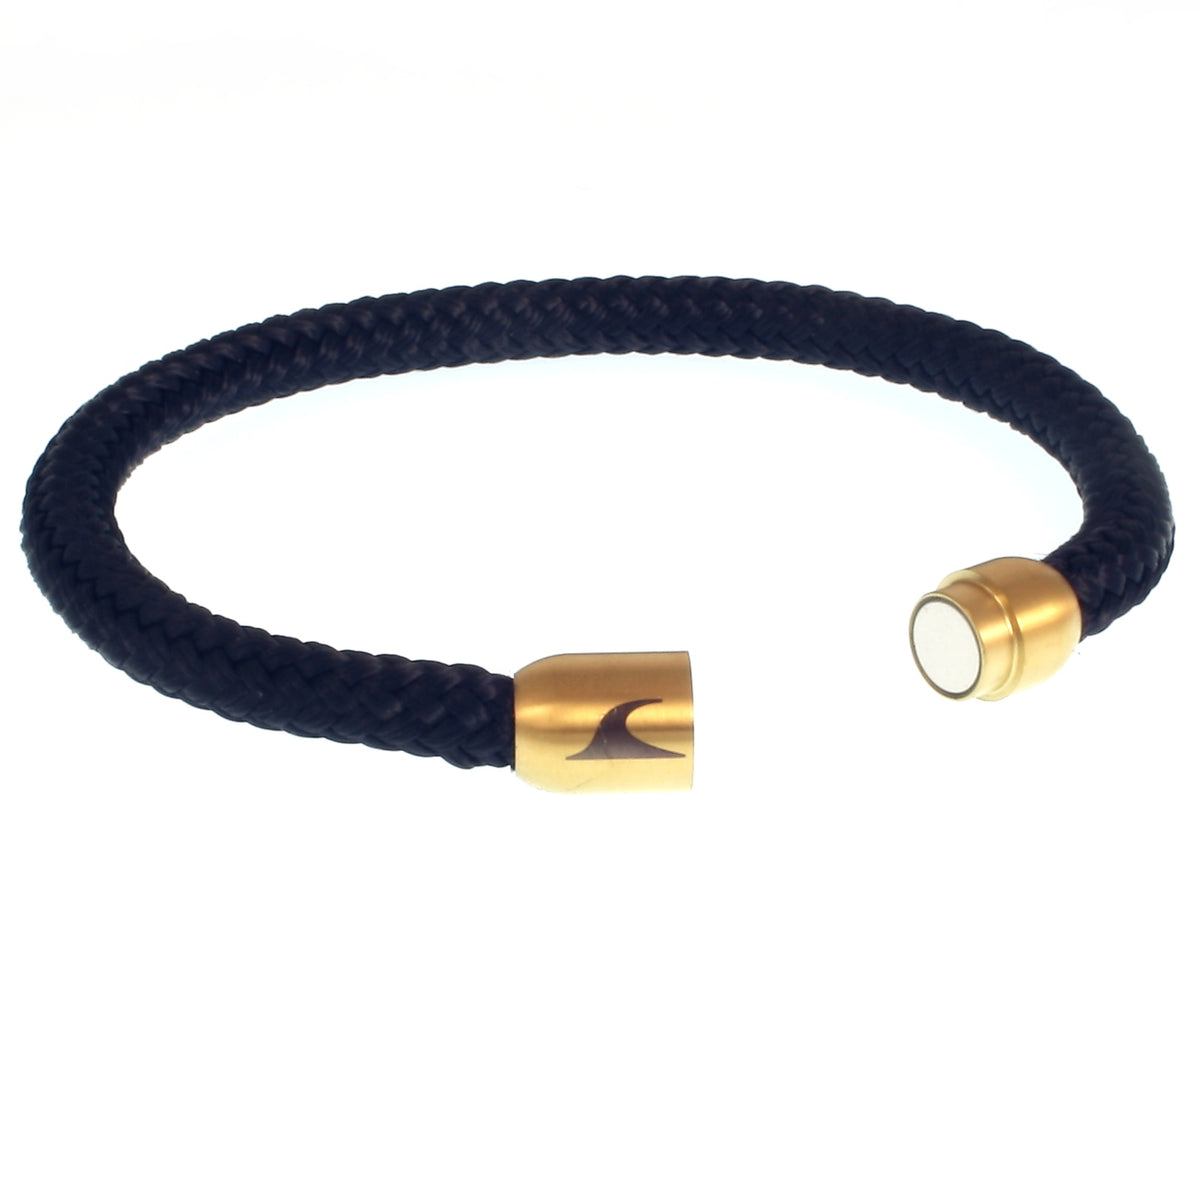 Herren-segeltau-armband-damen-sylt-nachtblau-marine-gold-geflochten-Edelstahlverschluss-offen-wavepirate-shop-st